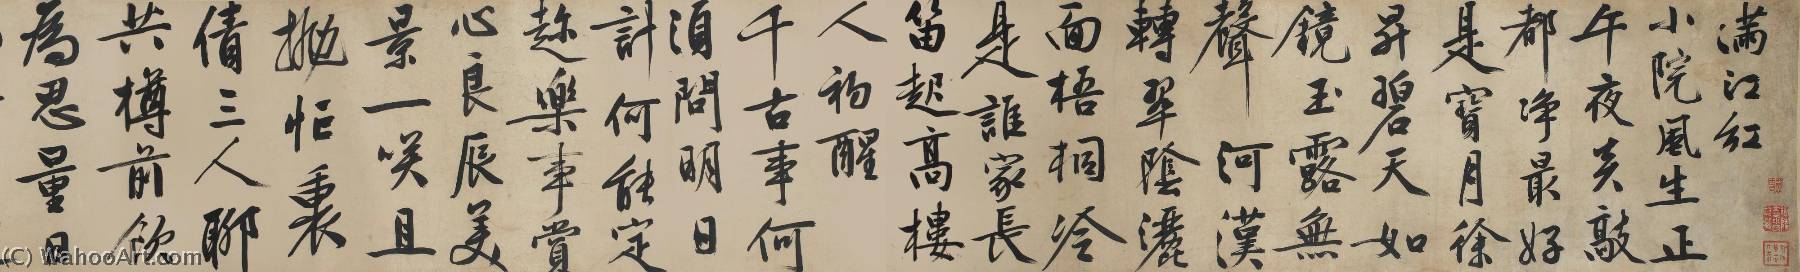 Wikioo.org - Encyklopedia Sztuk Pięknych - Malarstwo, Grafika Wen Zhengming - THE POEM 'MAN JIANG HONG,' IN RUNNING SCRIPT